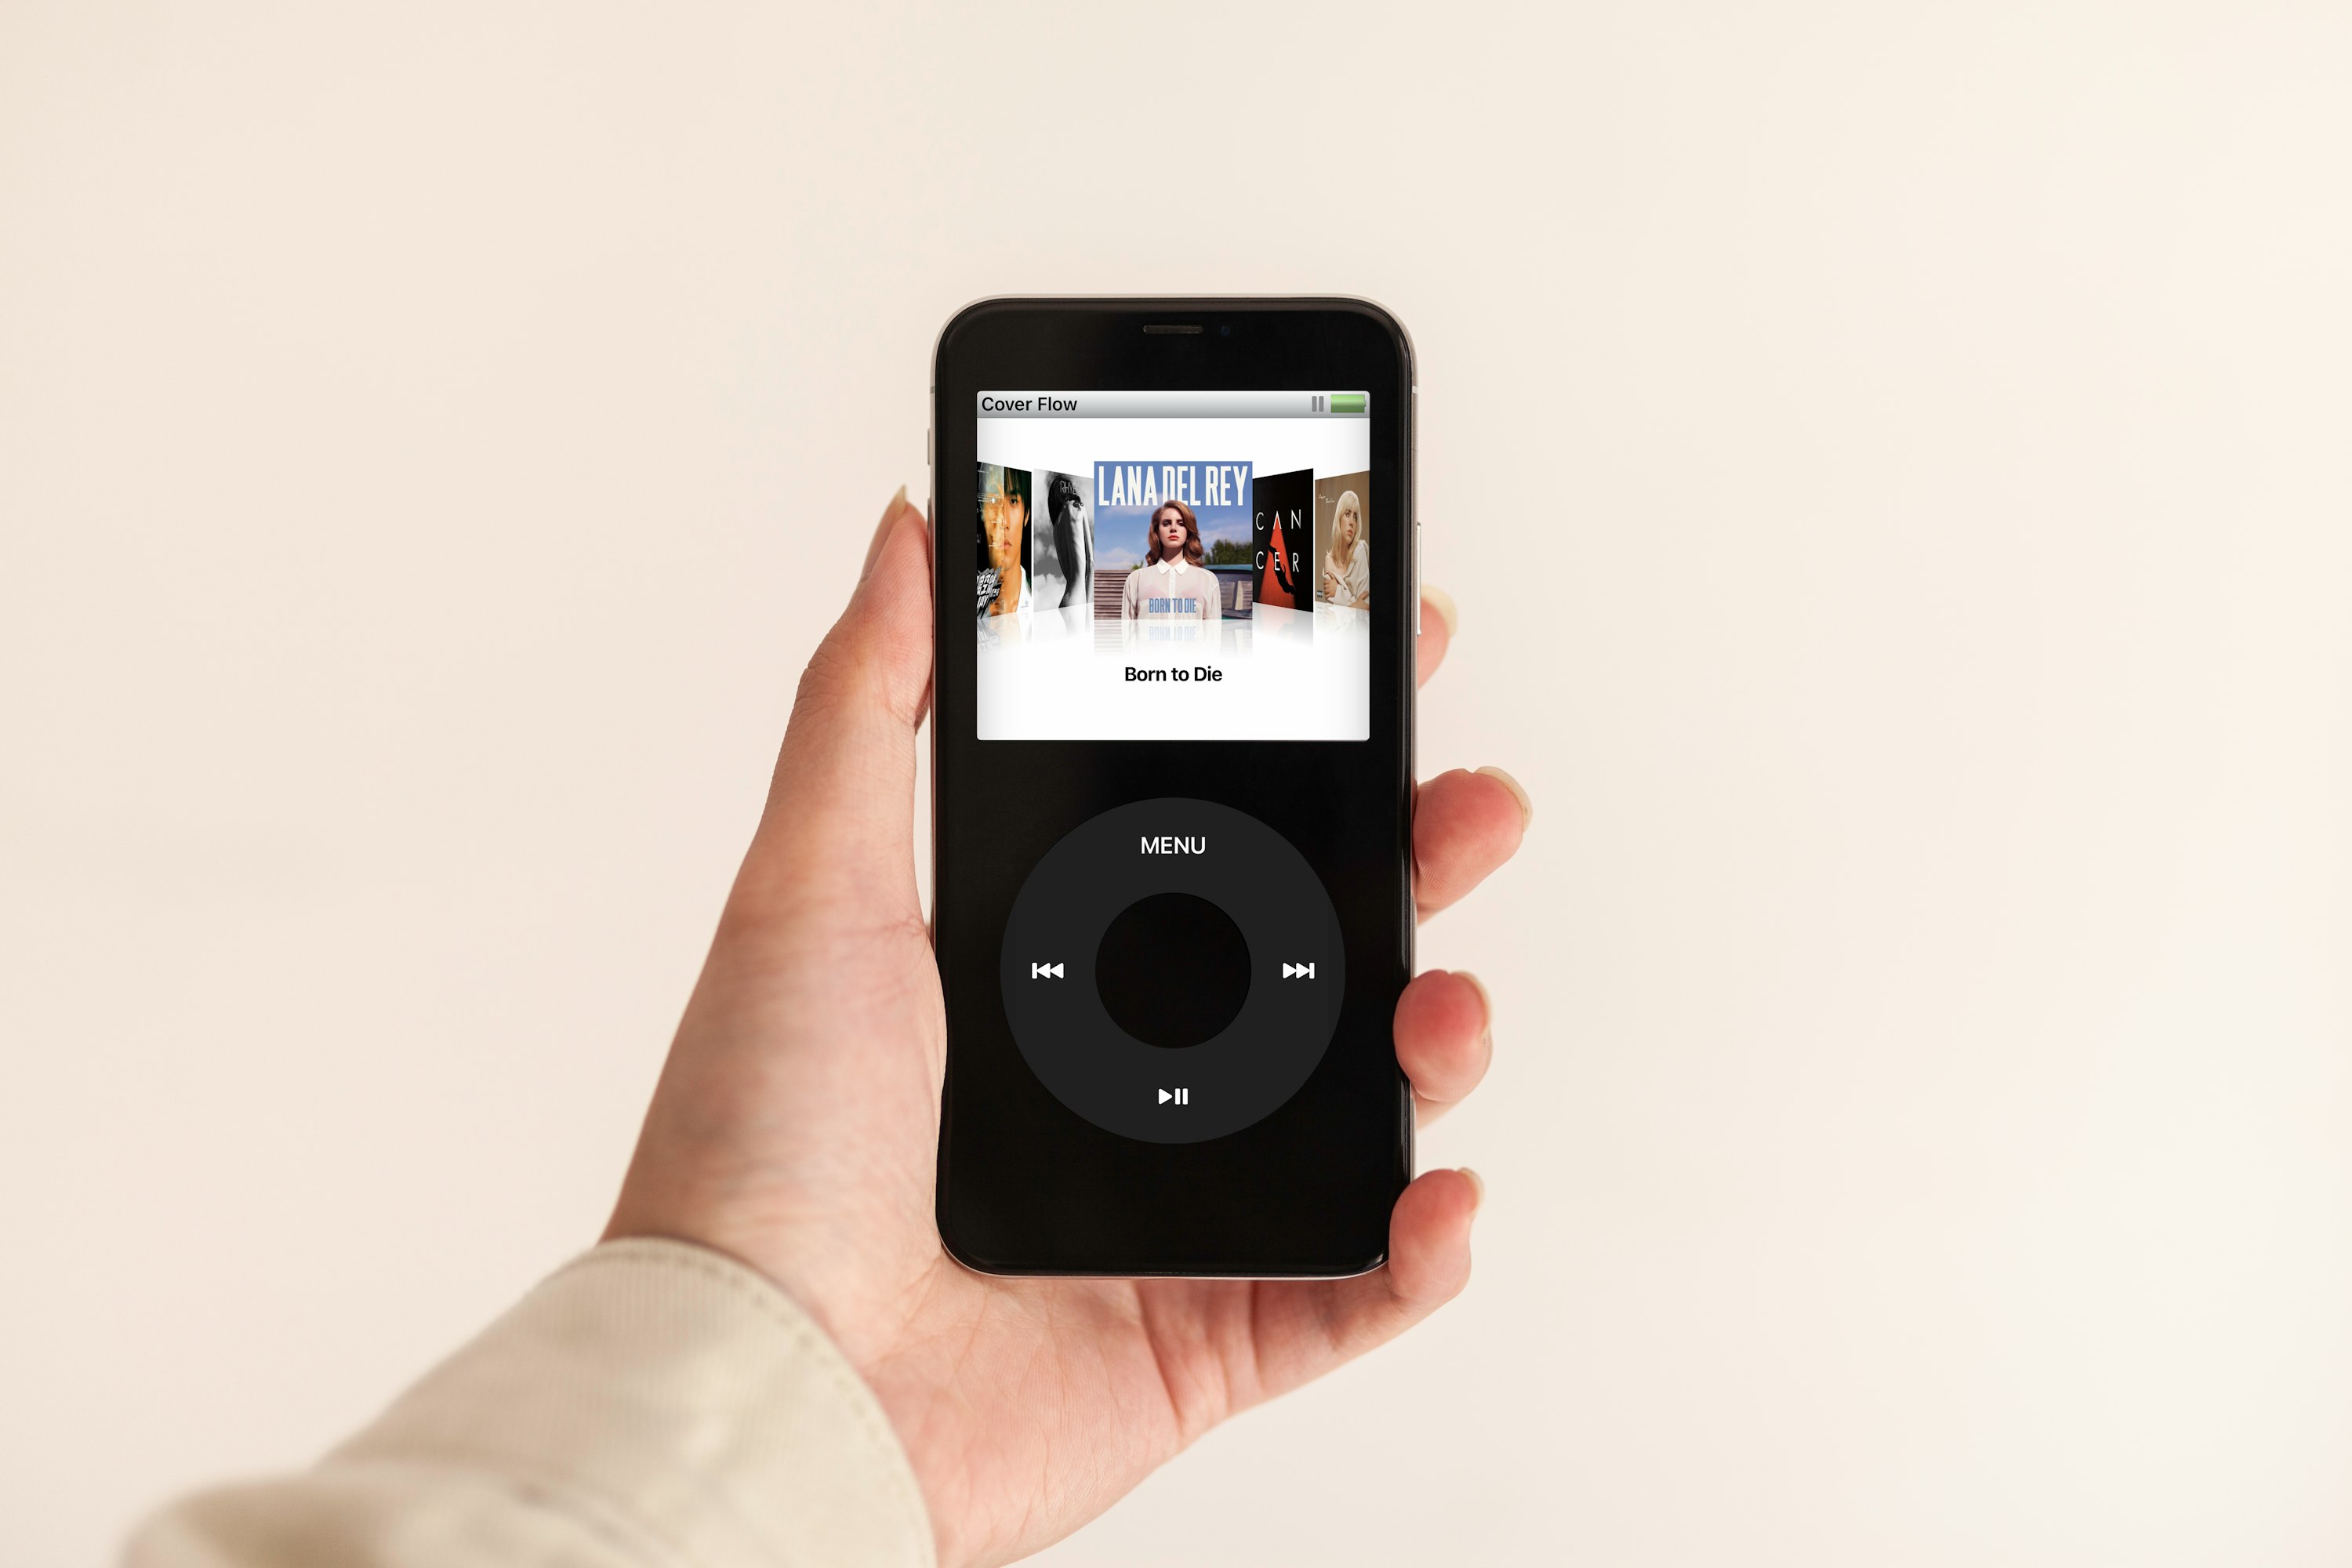 Mão esquerda a segurar um iPod com o álbum "Born to Die", de Lana Del Rey, no centro do ecrã.